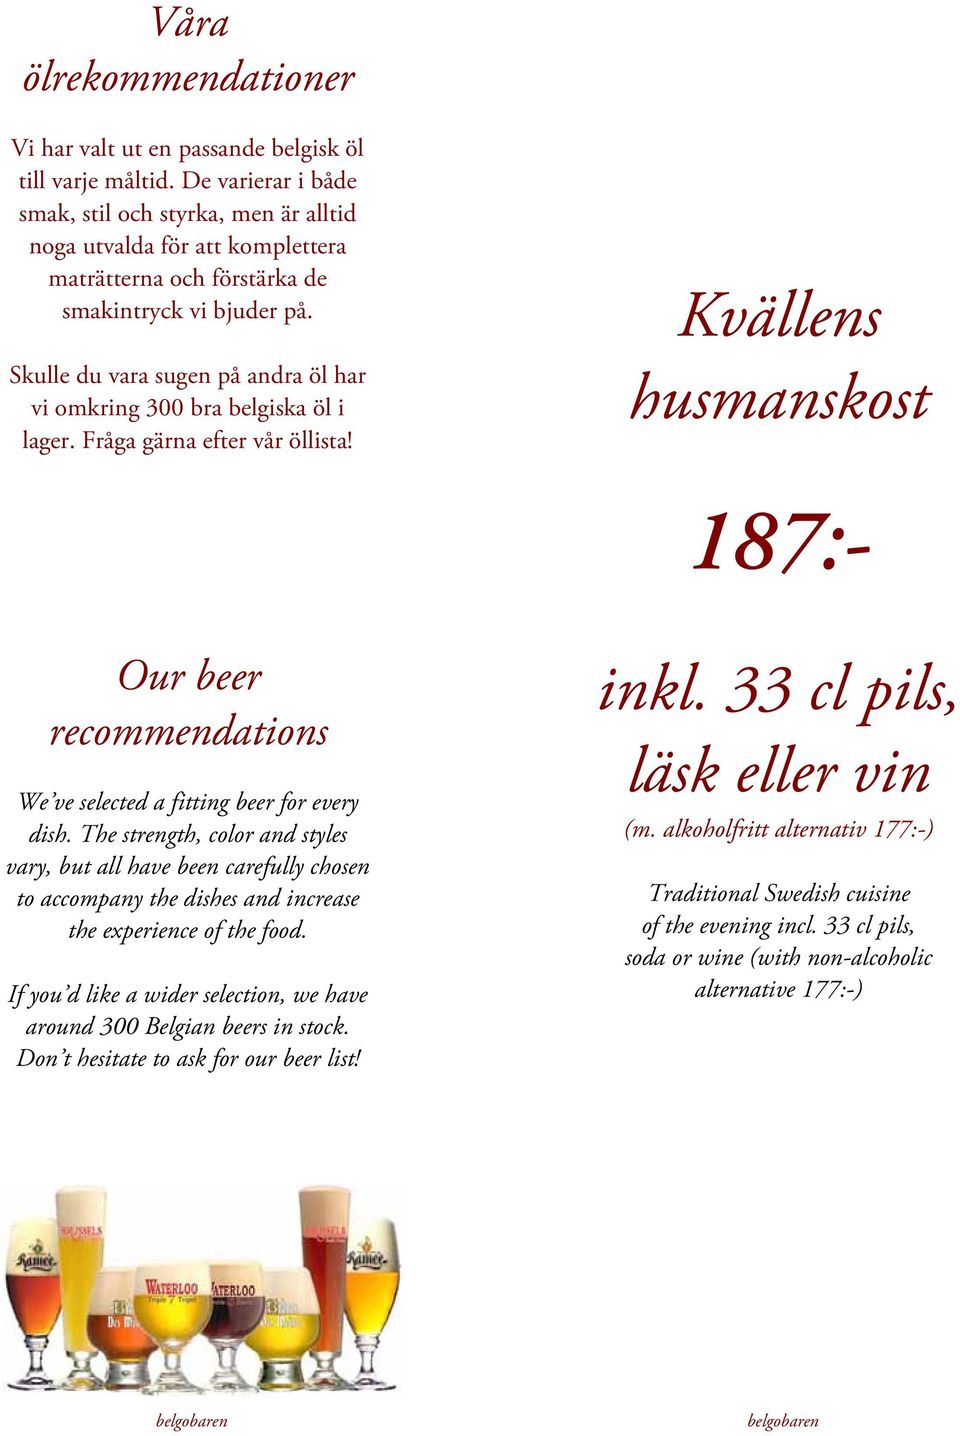 Skulle du vara sugen på andra öl har vi omkring 300 bra belgiska öl i lager. Fråga gärna efter vår öllista!